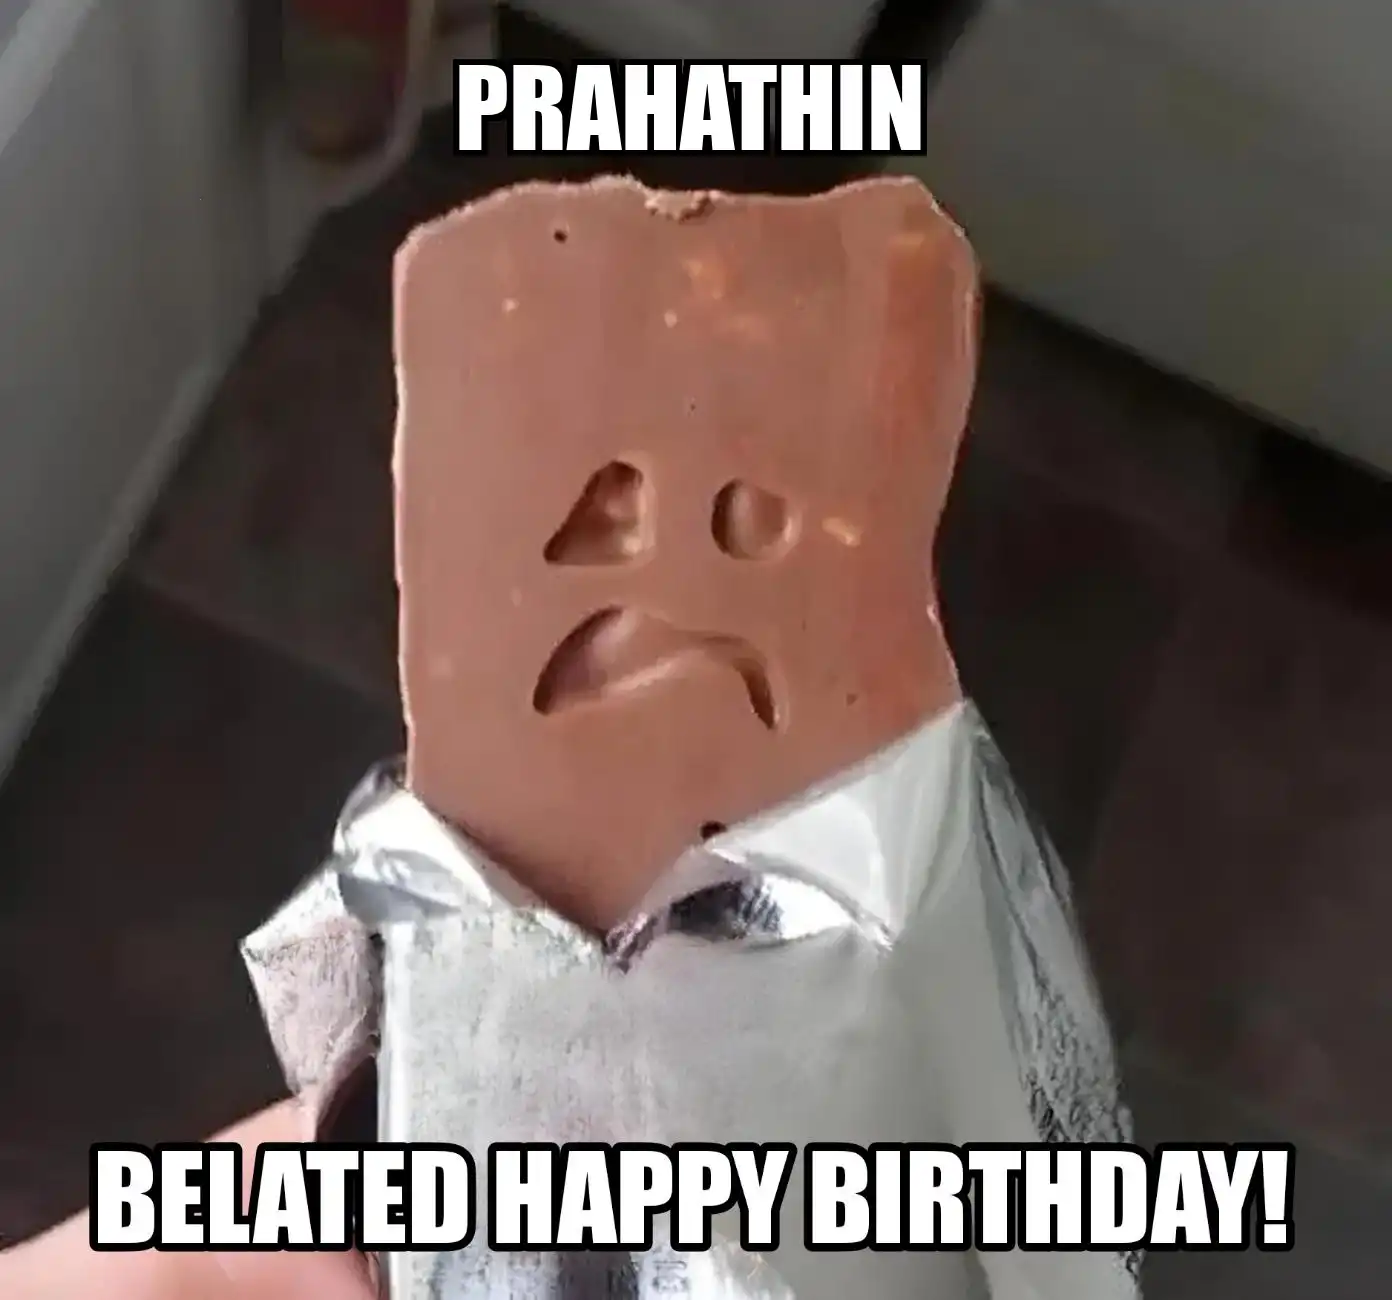 Happy Birthday Prahathin Belated Happy Birthday Meme